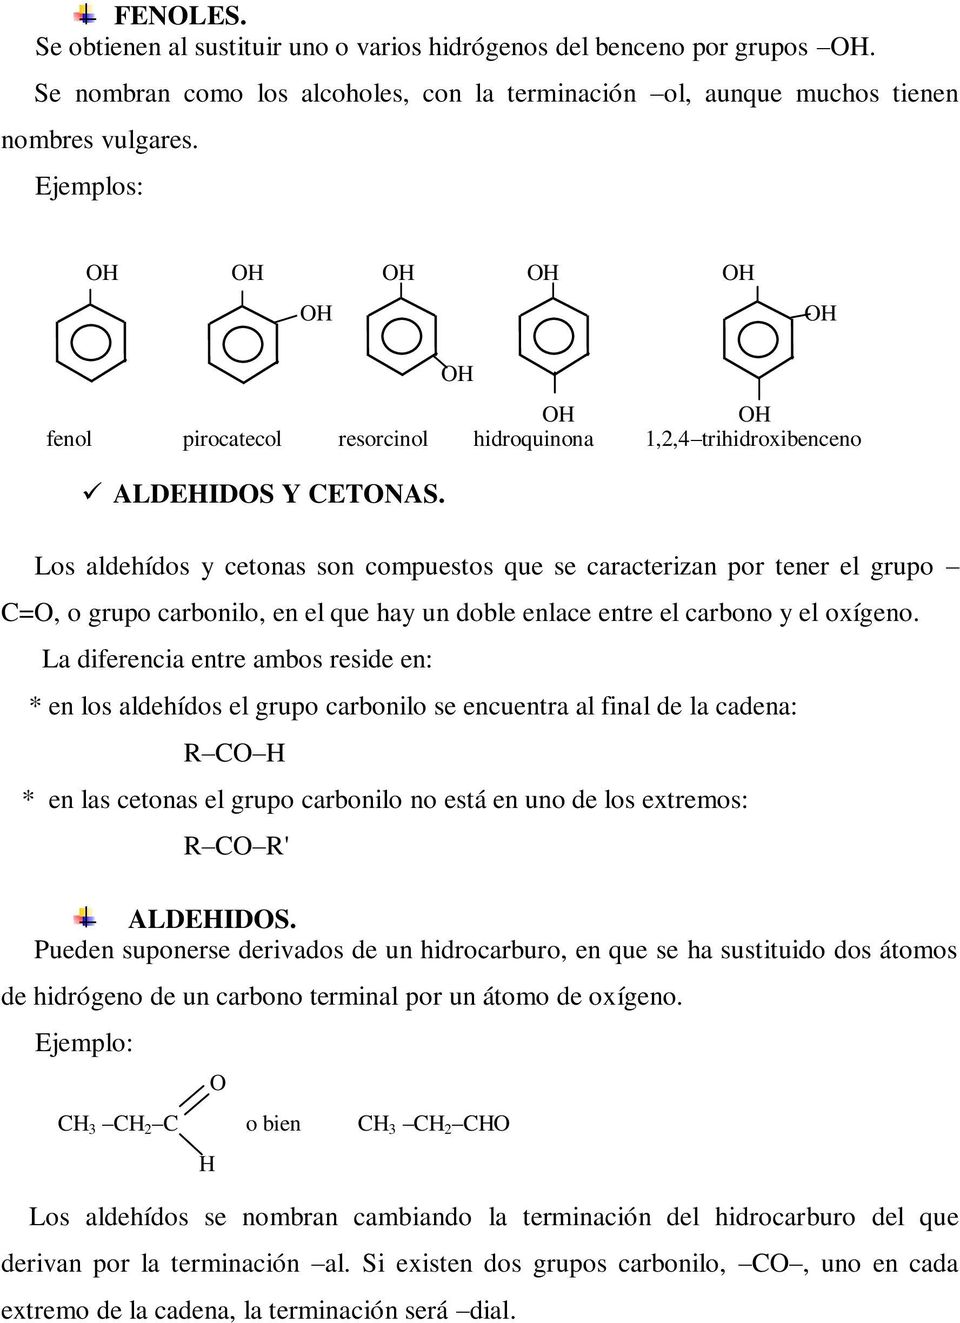 Los aldehídos y cetonas son compuestos que se caracterizan por tener el grupo C=, o grupo carbonilo, en el que hay un doble enlace entre el carbono y el oxígeno.